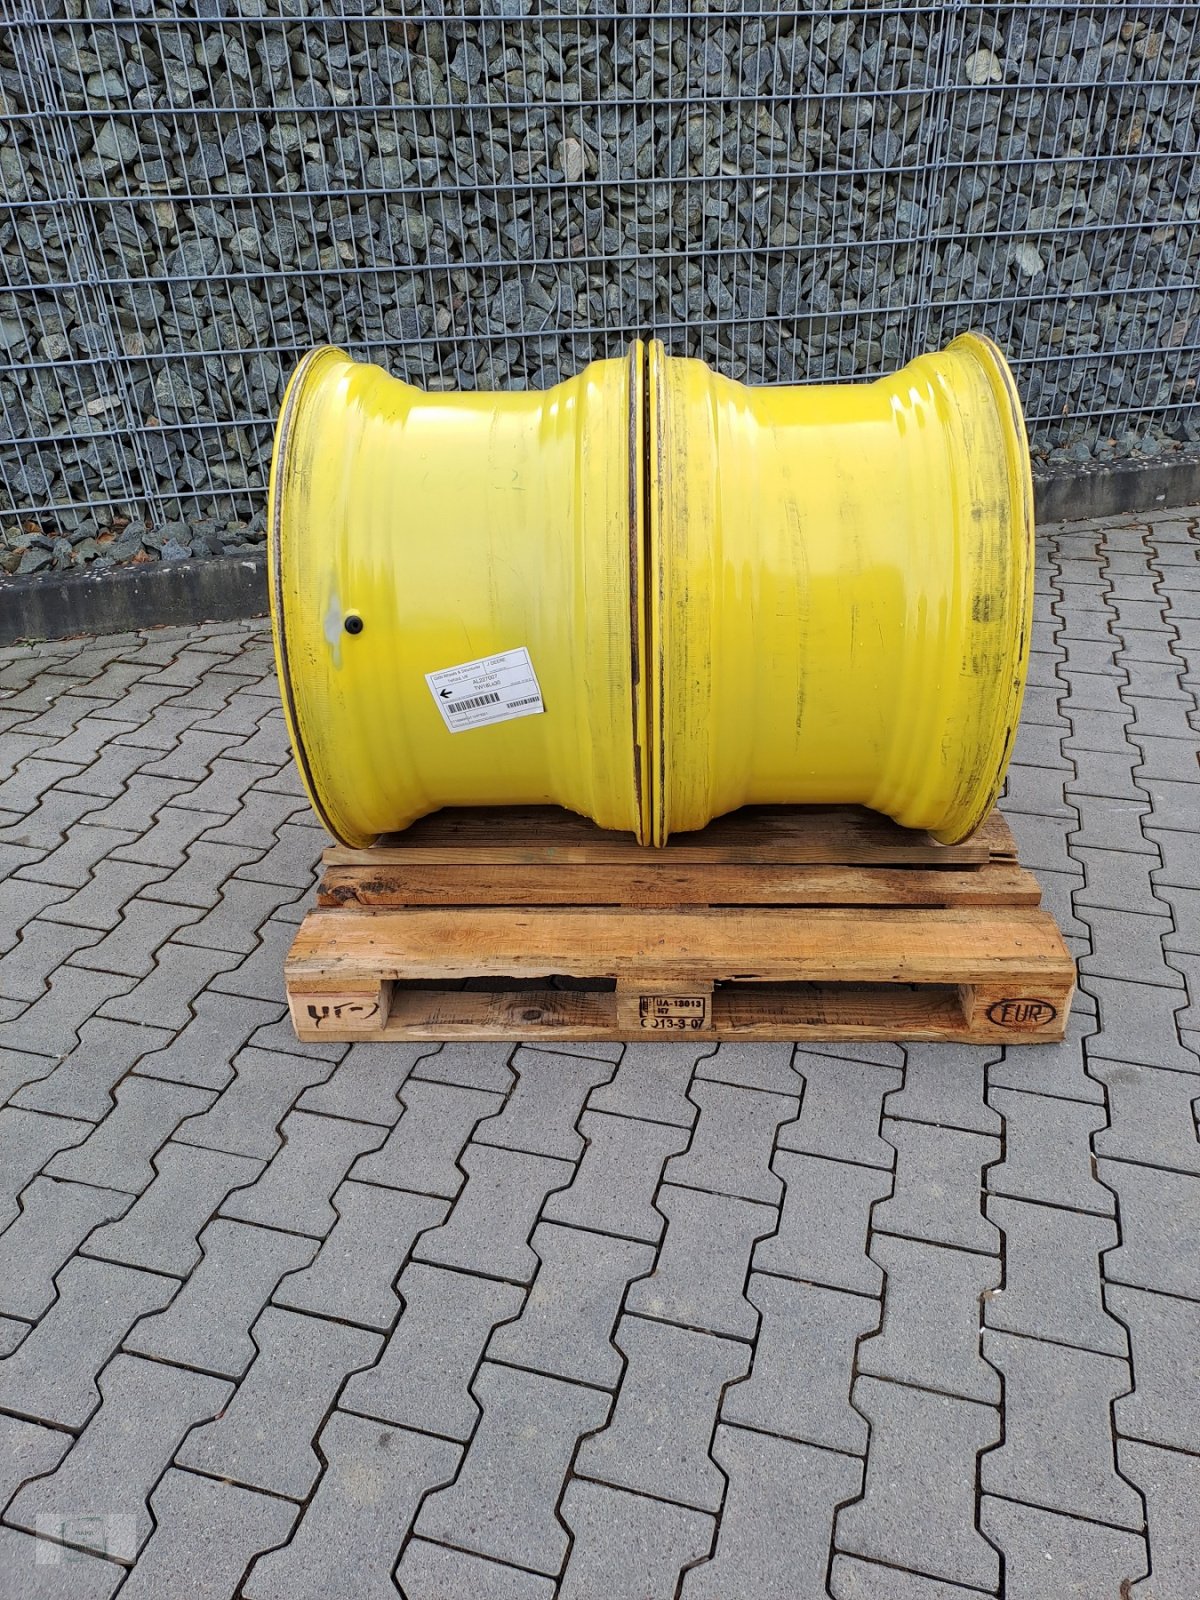 Sonstige Räder & Reifen & Felgen des Typs GKN DW 18x30, Neumaschine in Gross-Bieberau (Bild 1)